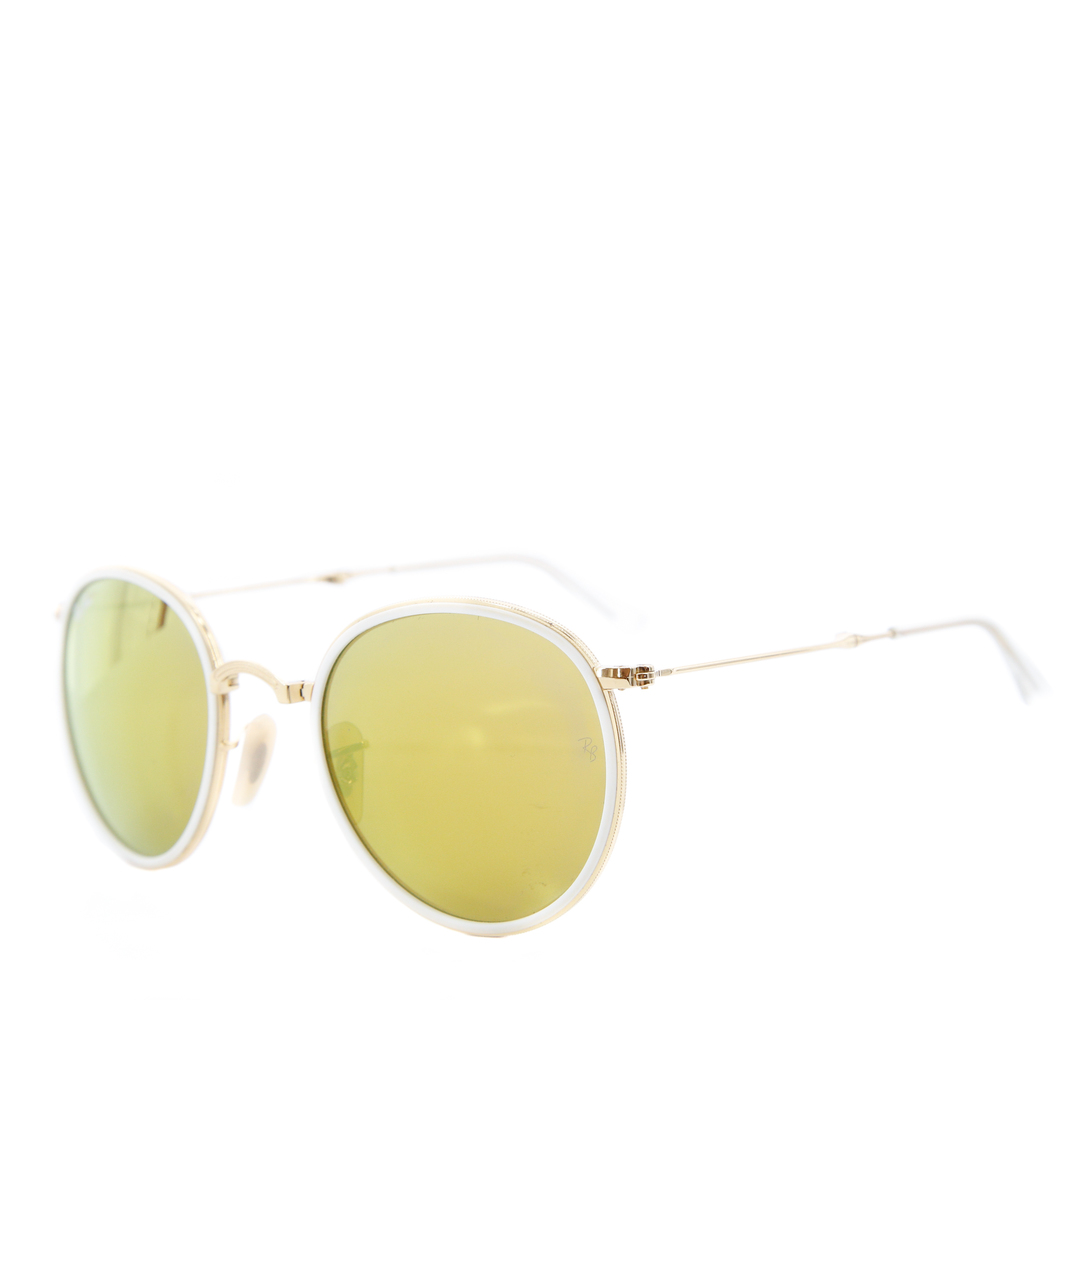 RAY BAN Желтые пластиковые солнцезащитные очки, фото 2